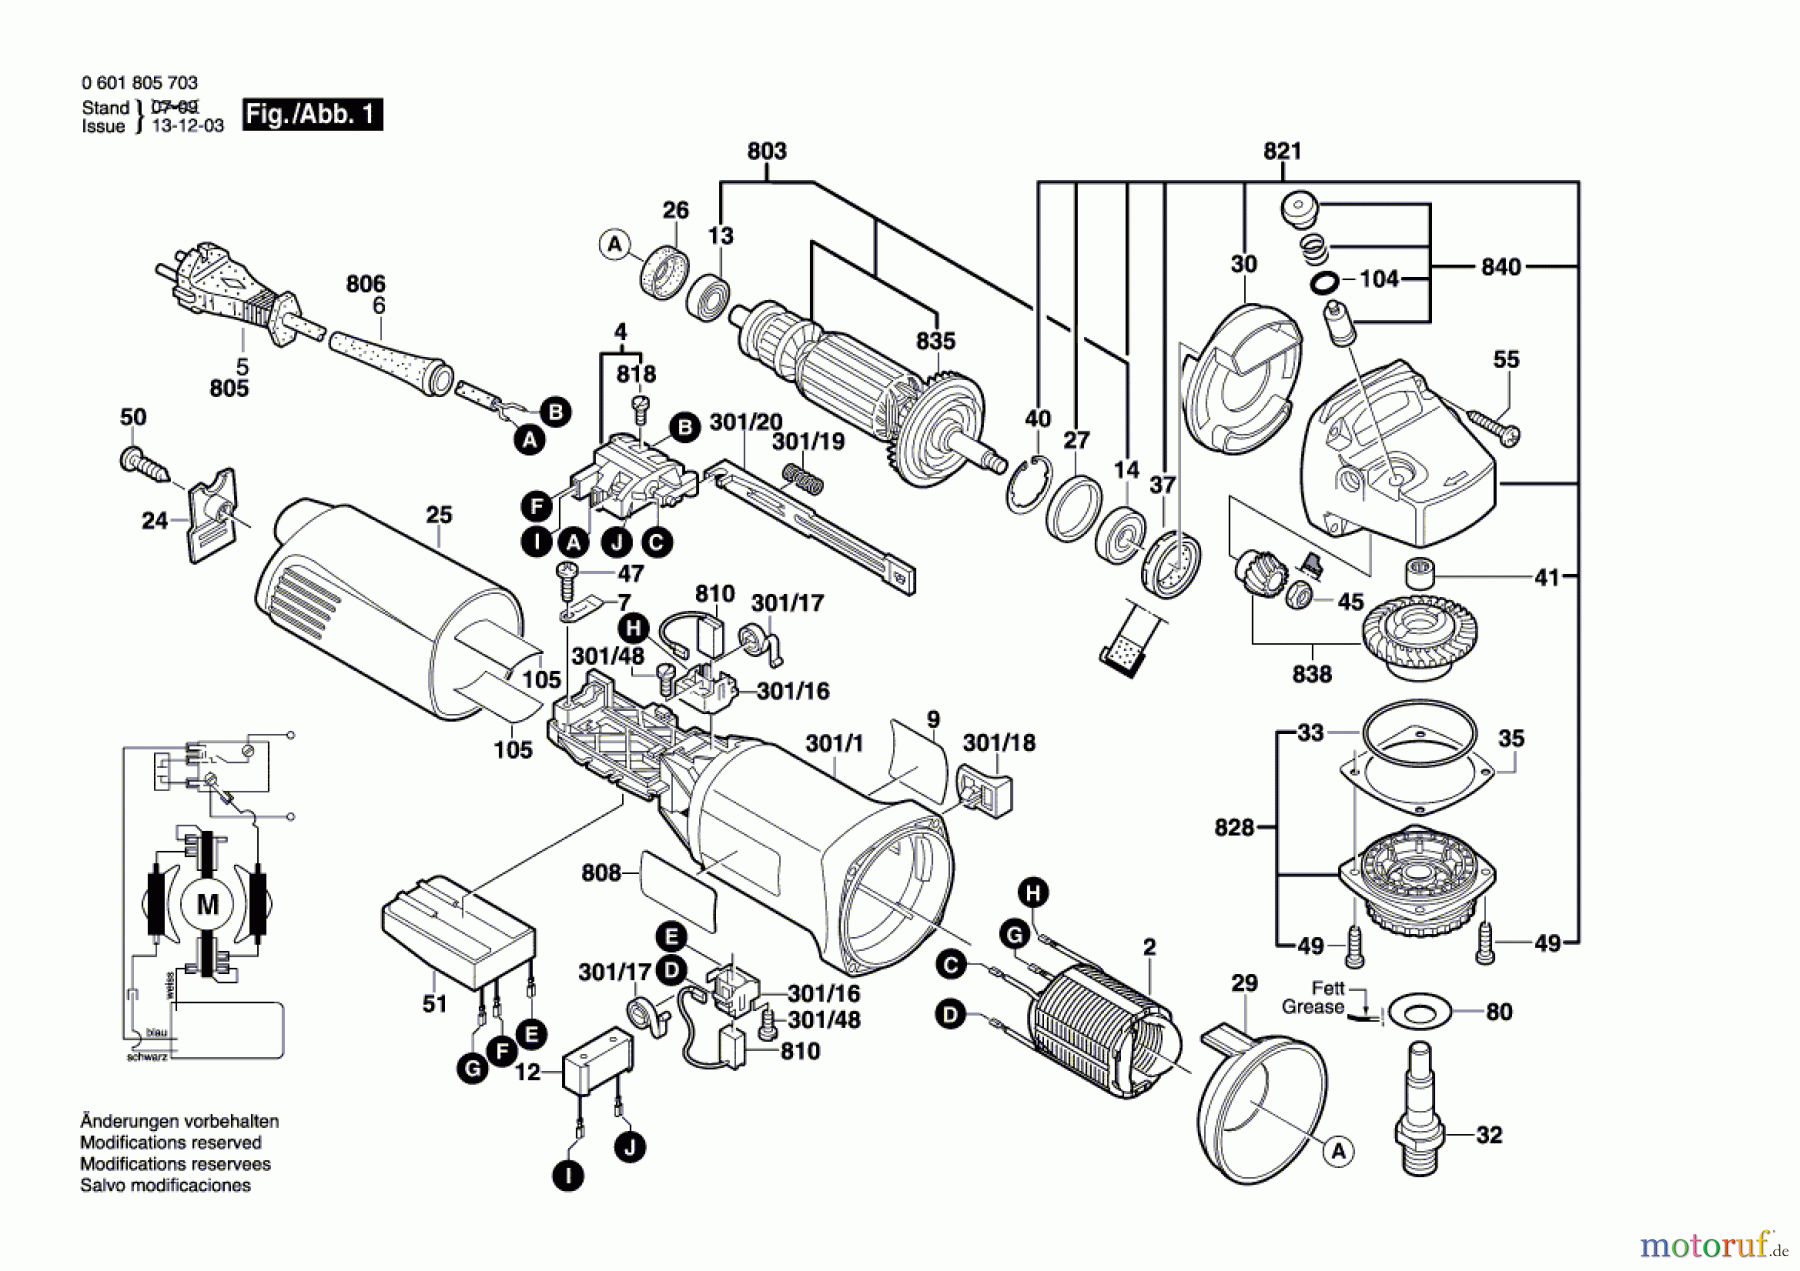  Bosch Werkzeug Winkelschleifer GWS 14-125CE Seite 1